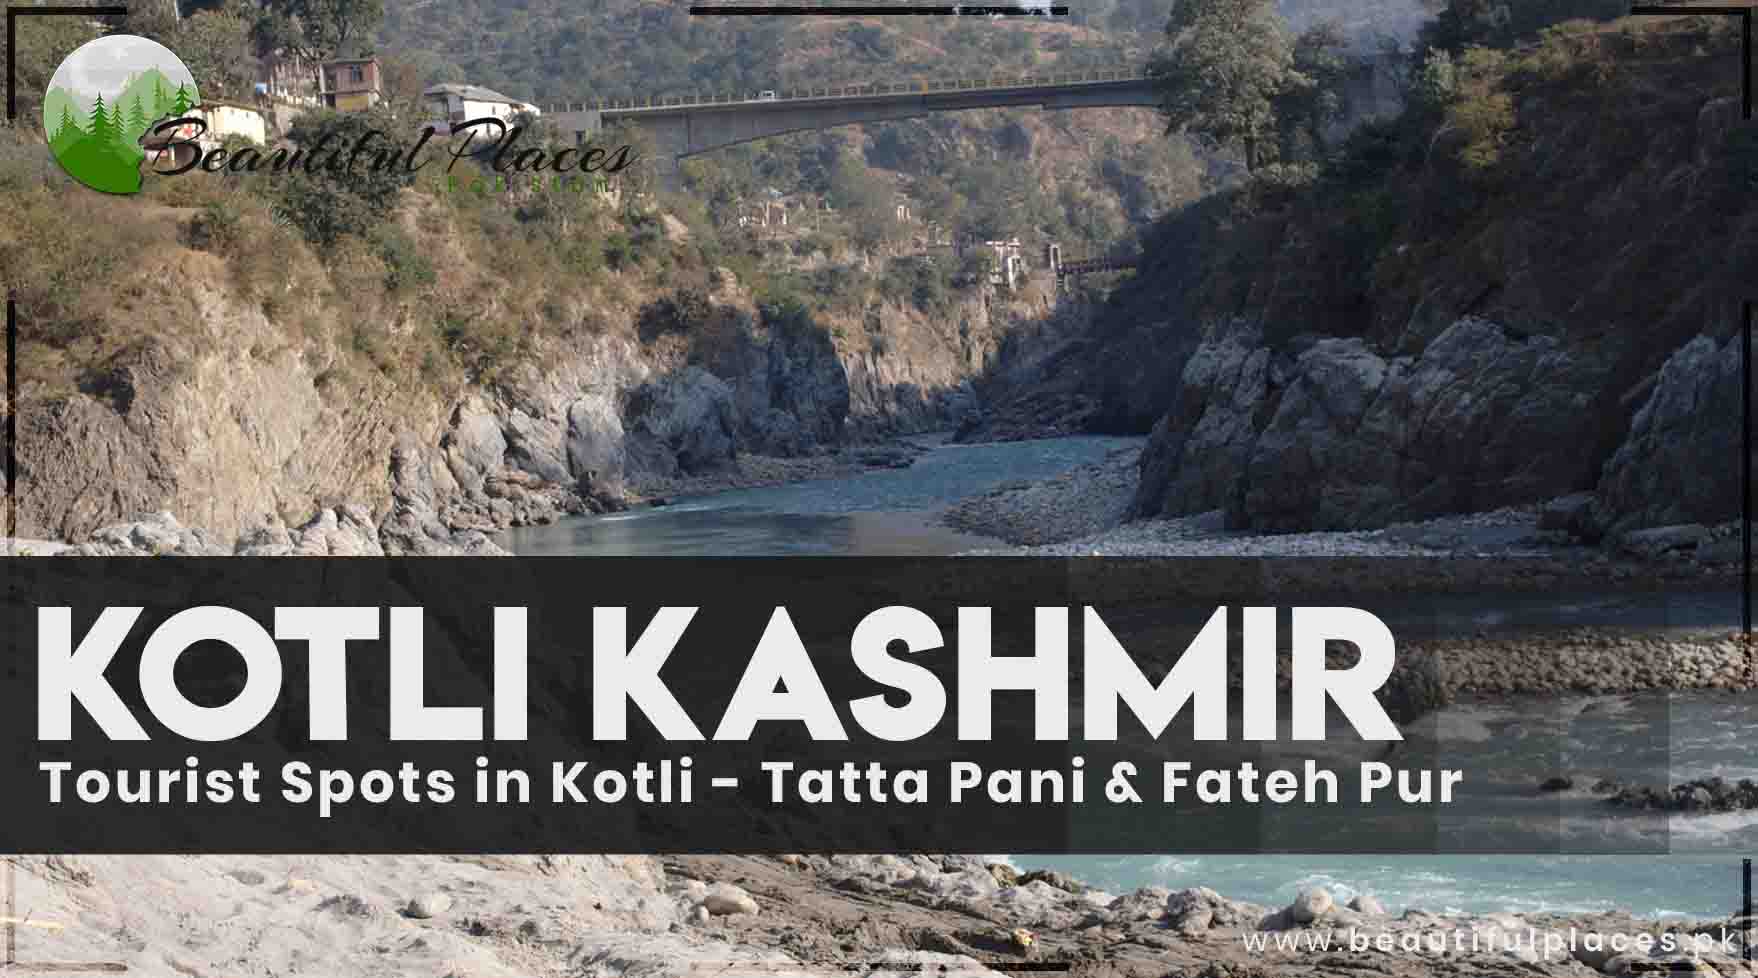 Tourist Spots in Kotli Kashmir - Tatta Pani & Fateh Pur